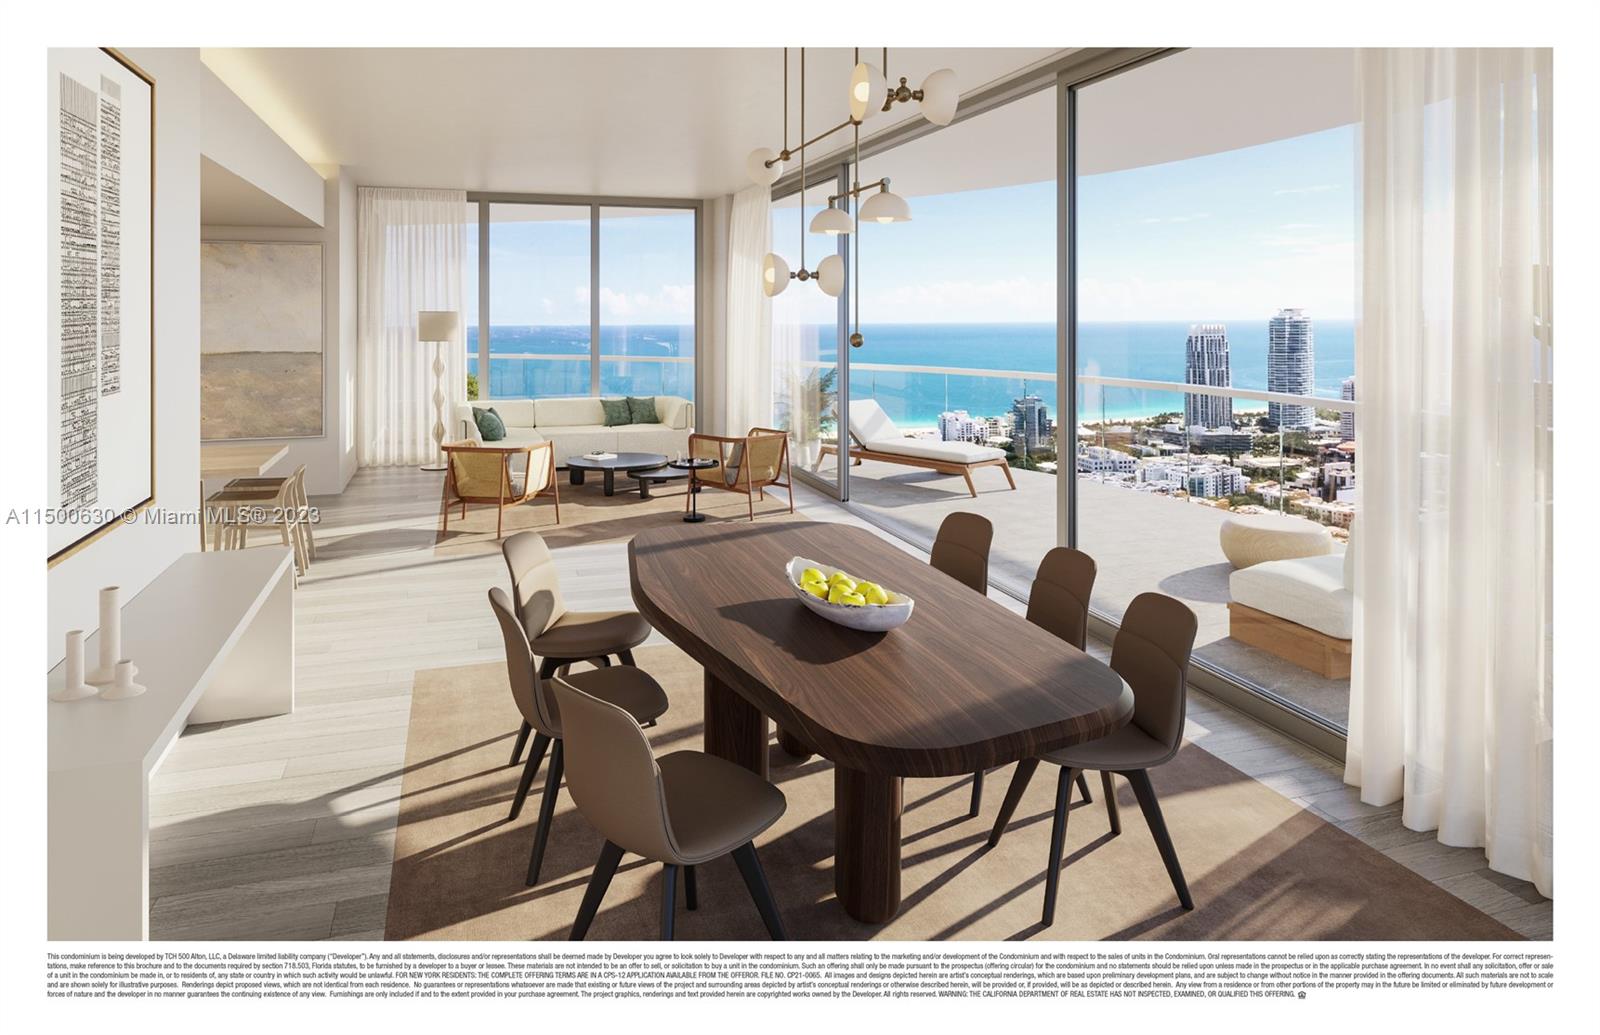 Property for Sale at 500 Alton Rd 4401, Miami Beach, Miami-Dade County, Florida - Bedrooms: 4 
Bathrooms: 5  - $10,565,000